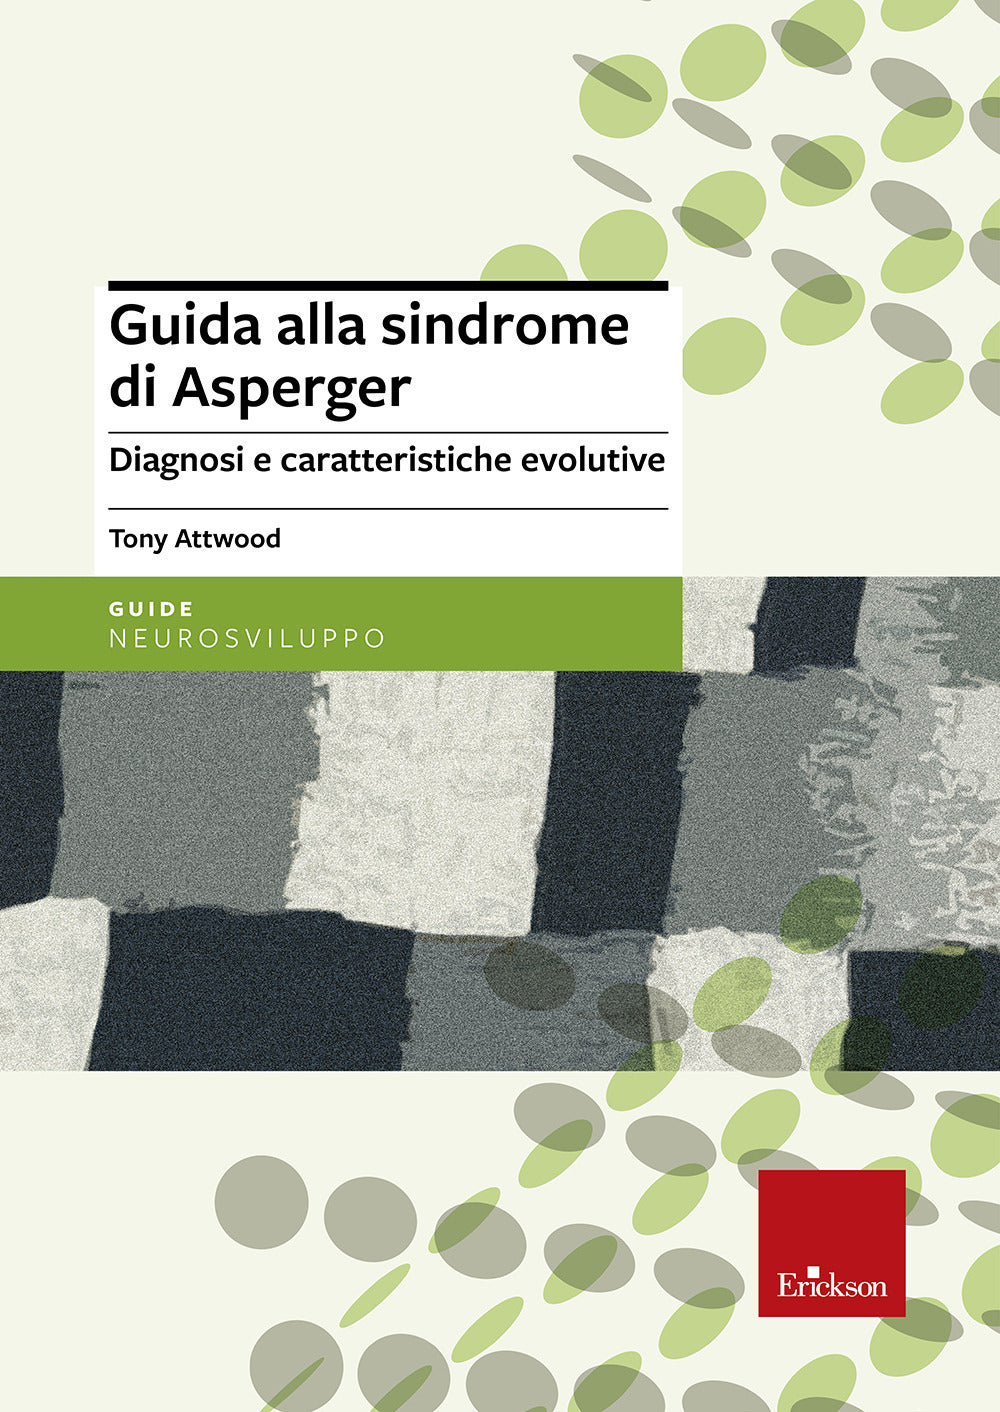 Guida alla sindrome di Asperger. Diagnosi e caratteristiche evolutive.